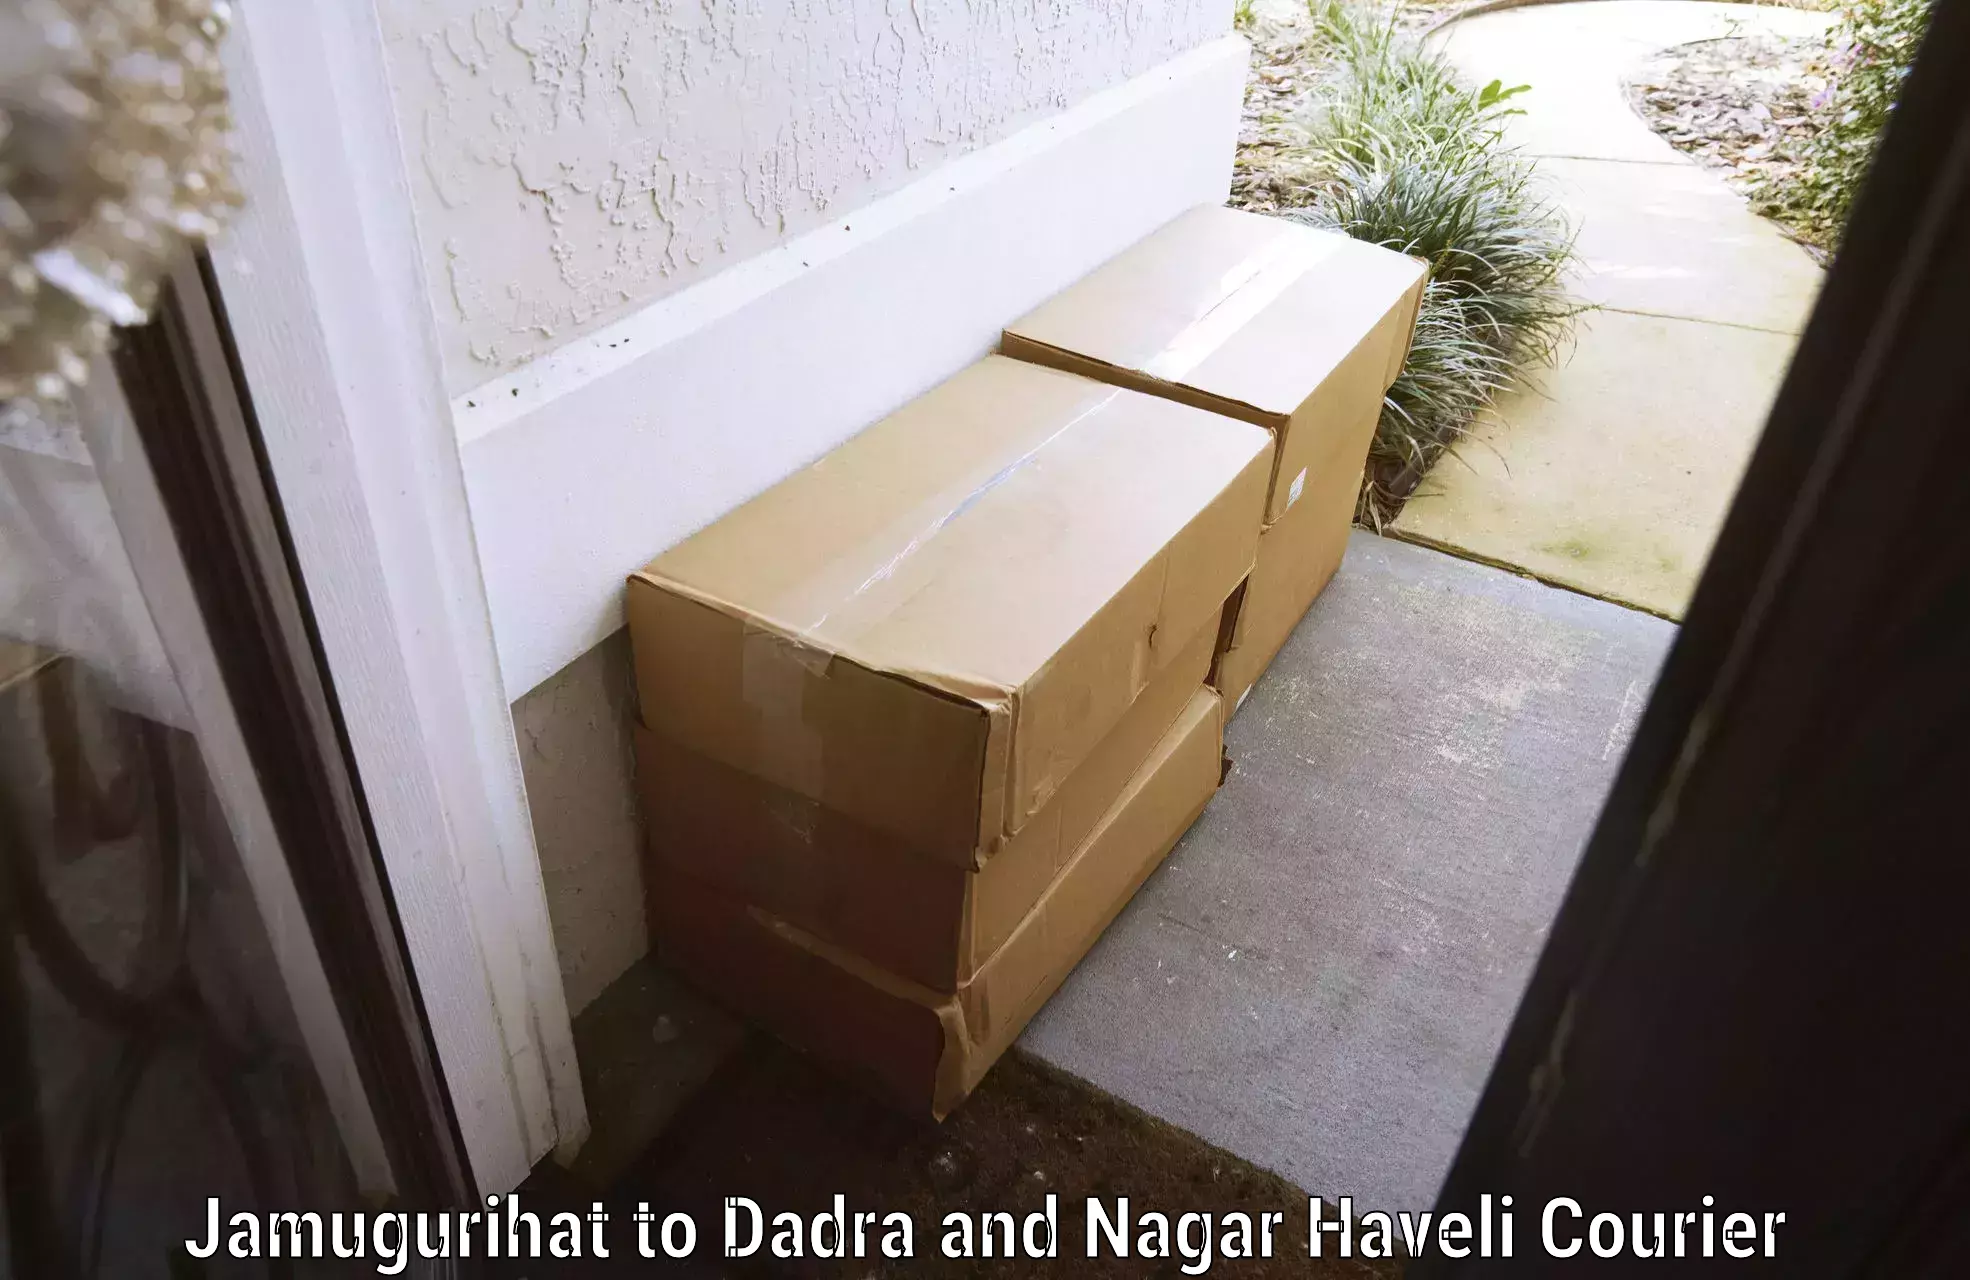 Reliable luggage courier Jamugurihat to Dadra and Nagar Haveli